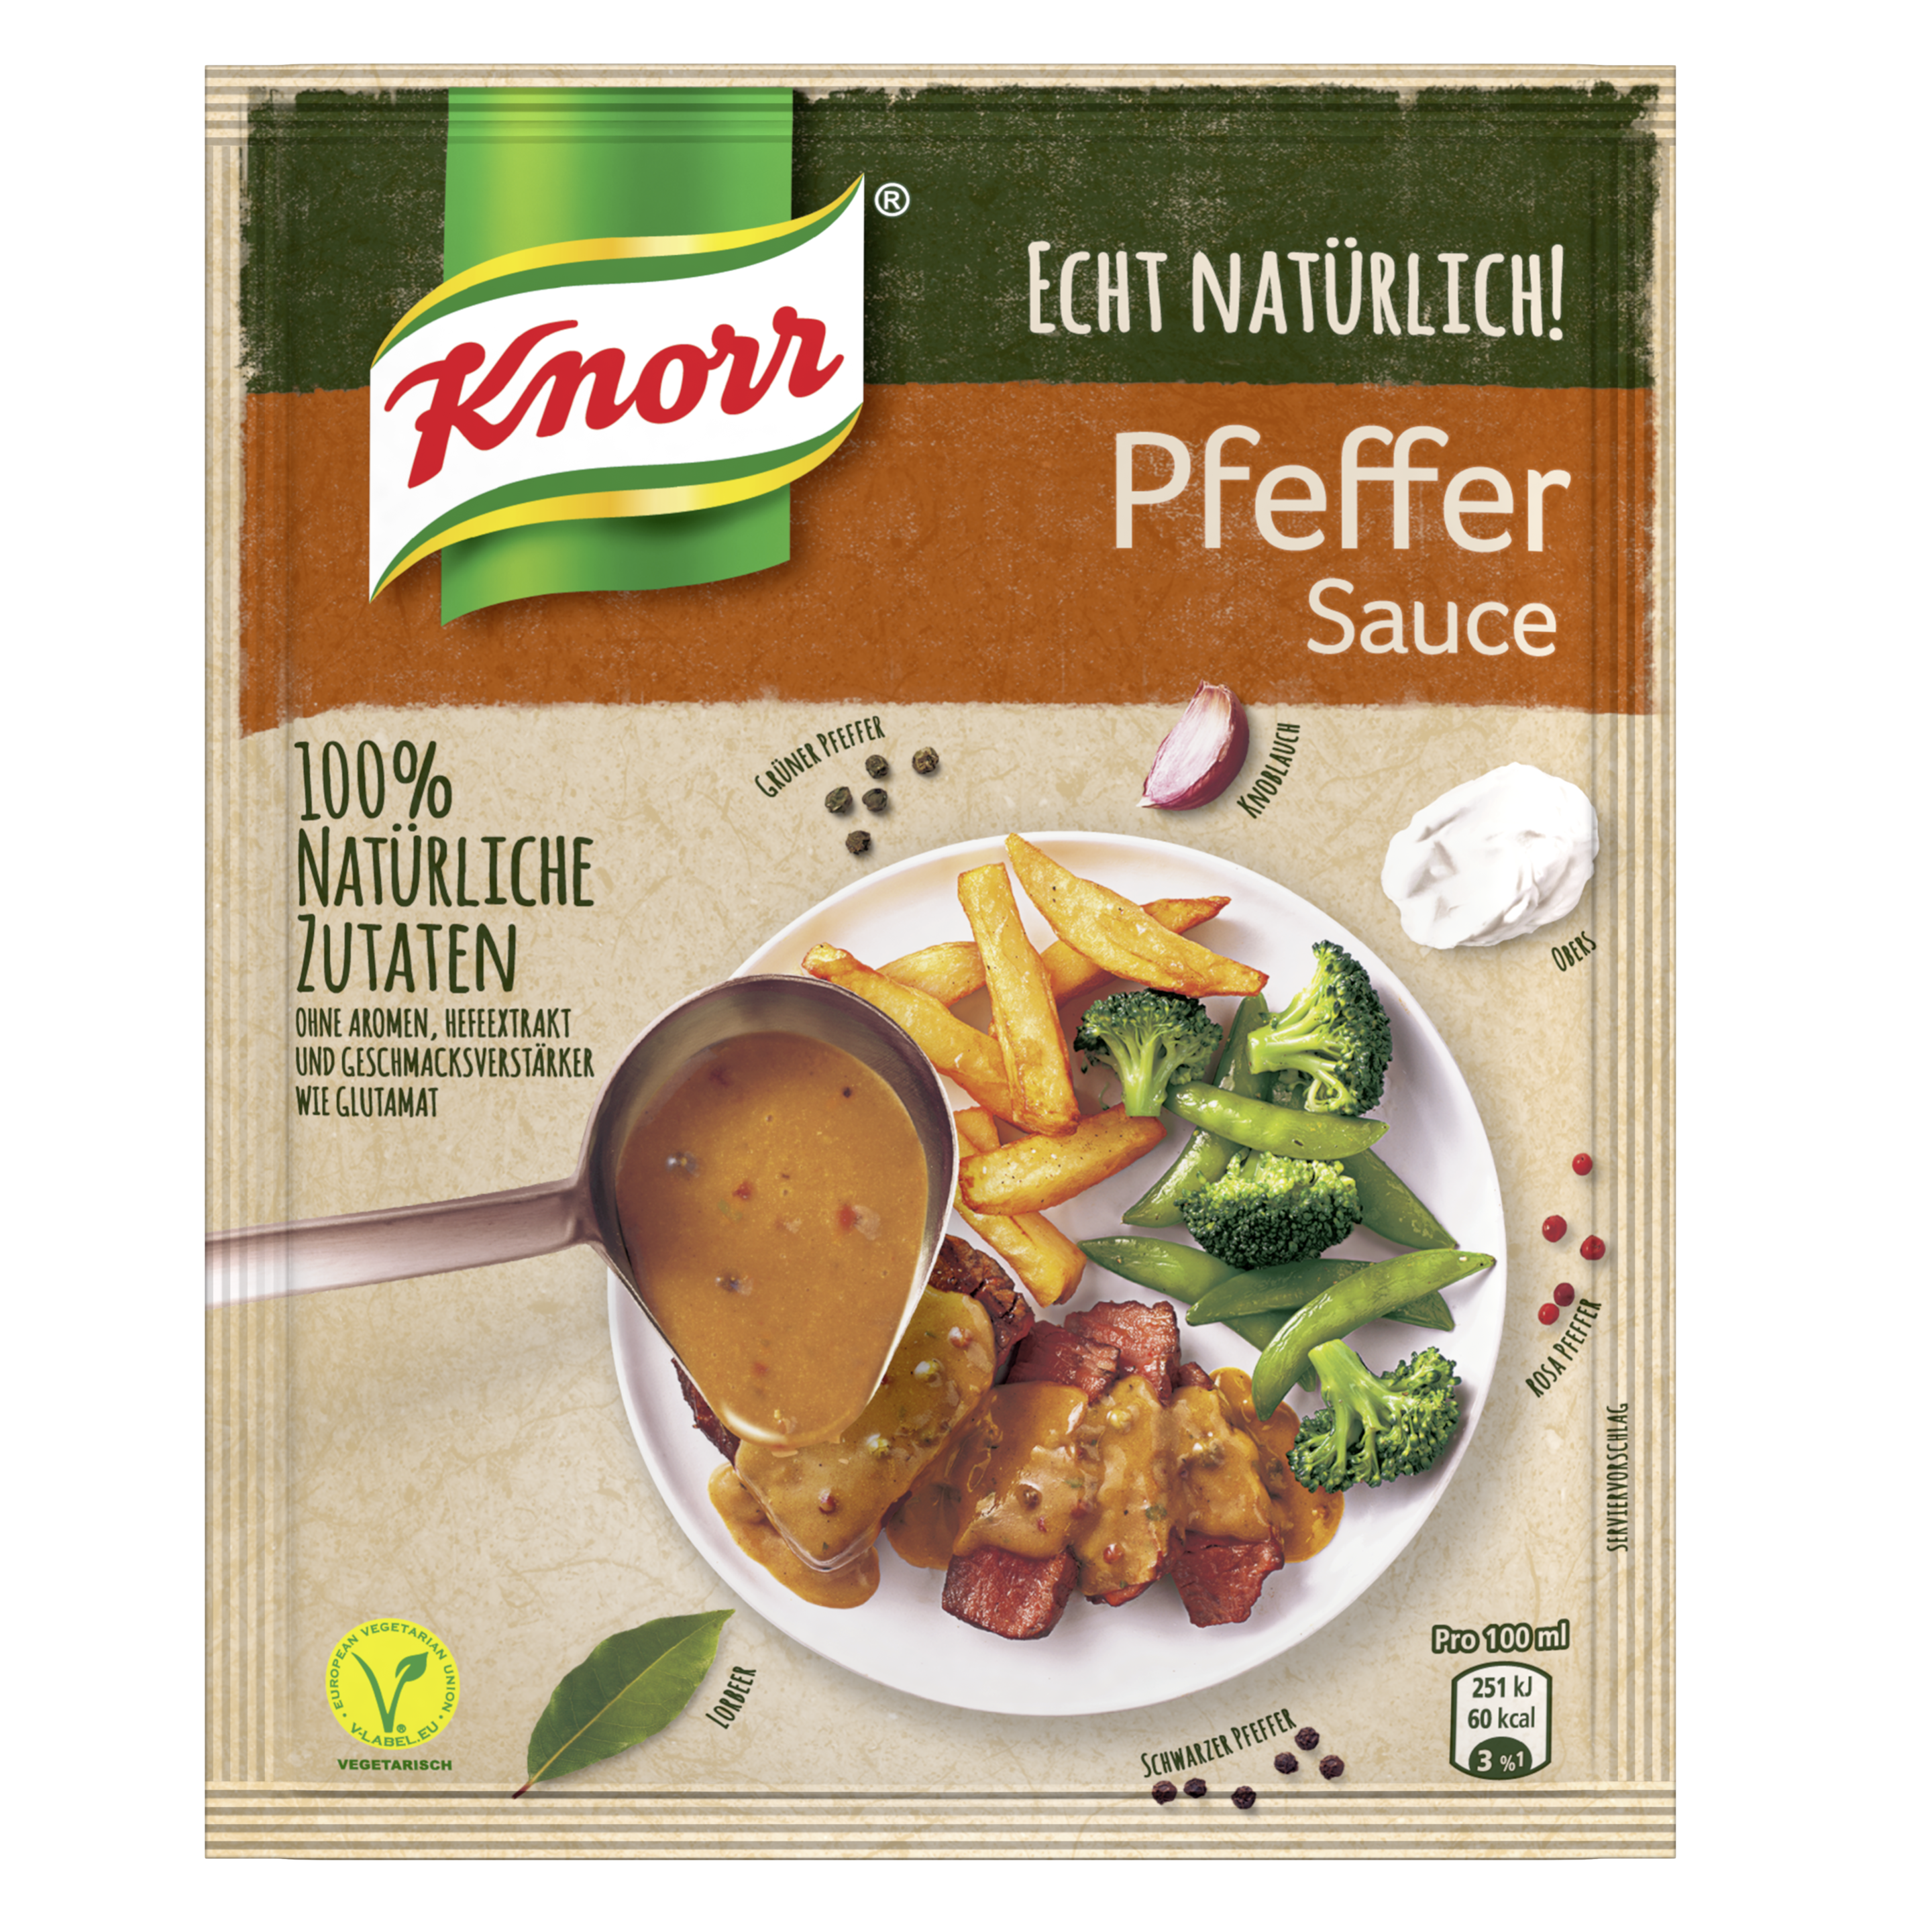 Knorr Echt Natürlich! Pfeffer Sauce 34 g